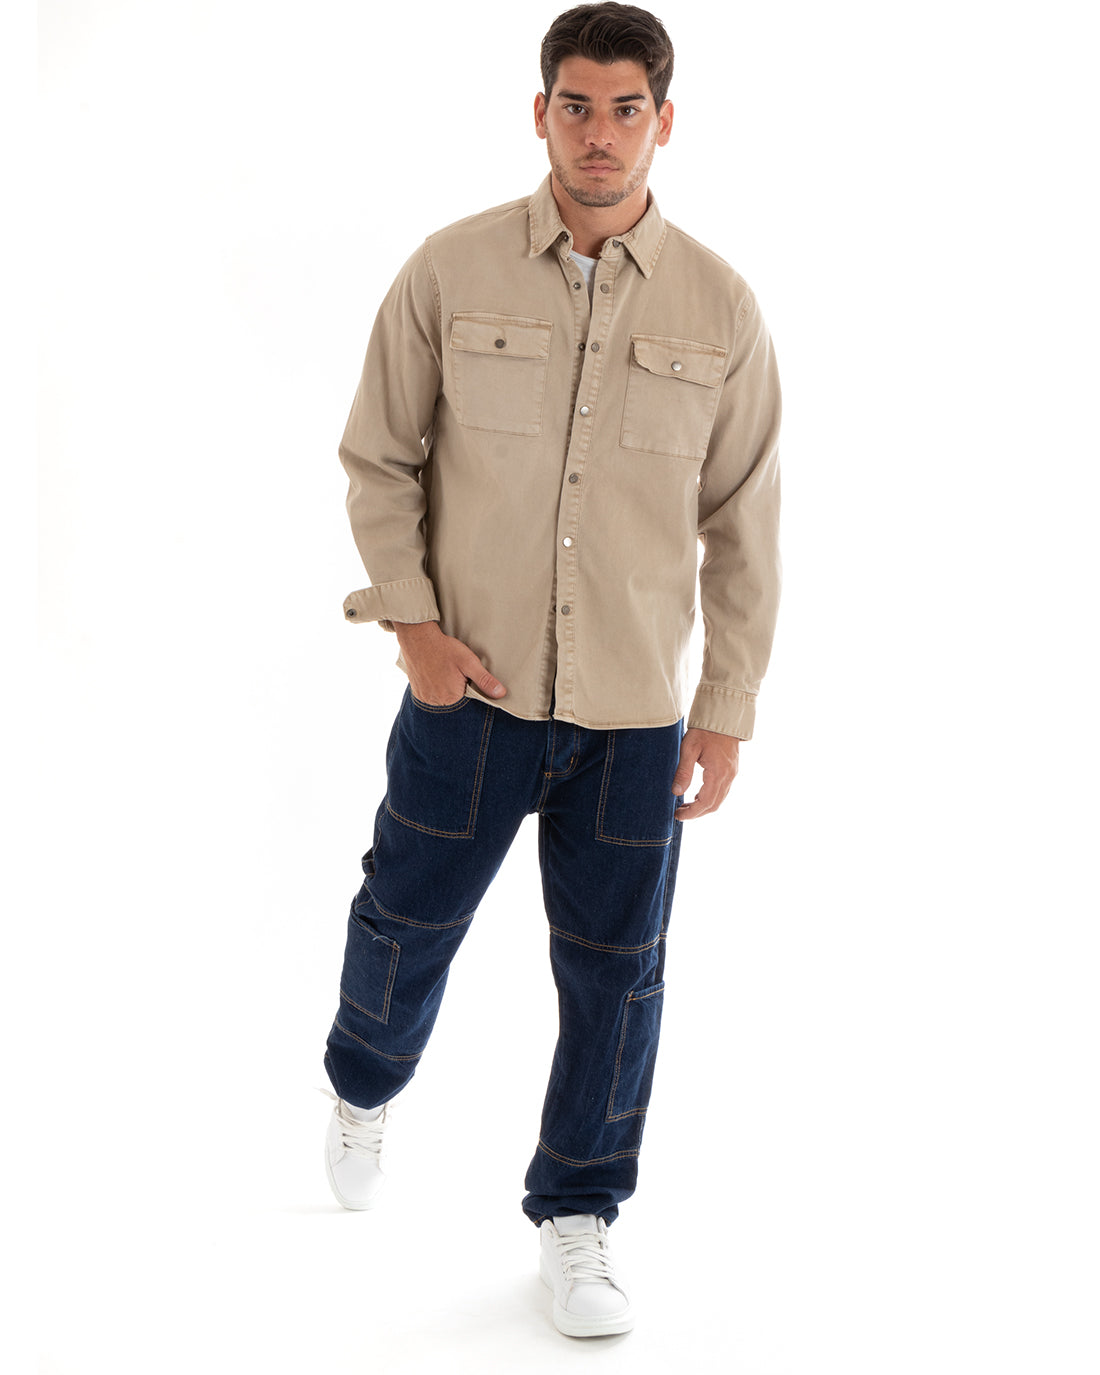 Giubbotto Uomo Giacca Jeans Con Colletto Camicione Denim Beige GIOSAL-G3079A